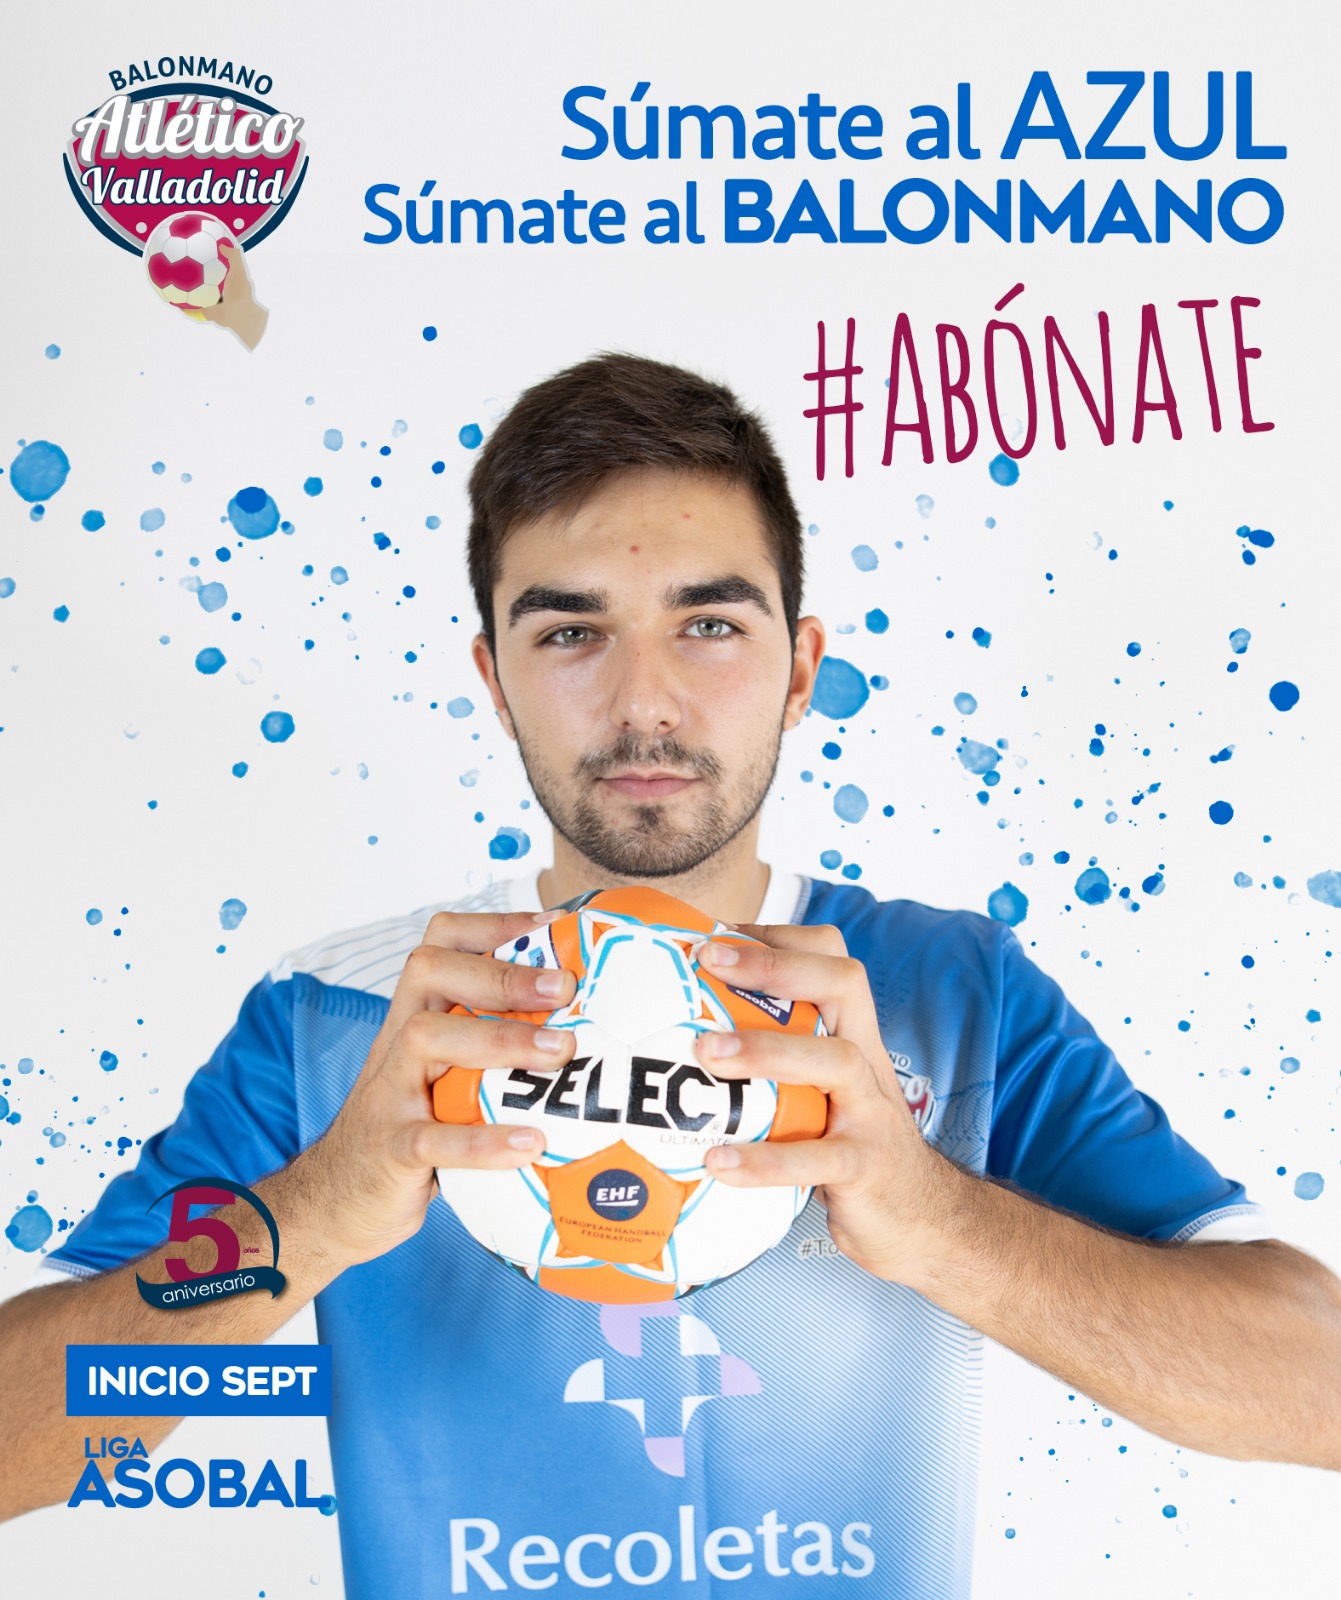 ¡Súmate al azul’, súmate al balonmano con el Recoletas Atlético Valladolid | Galería 23 / 28